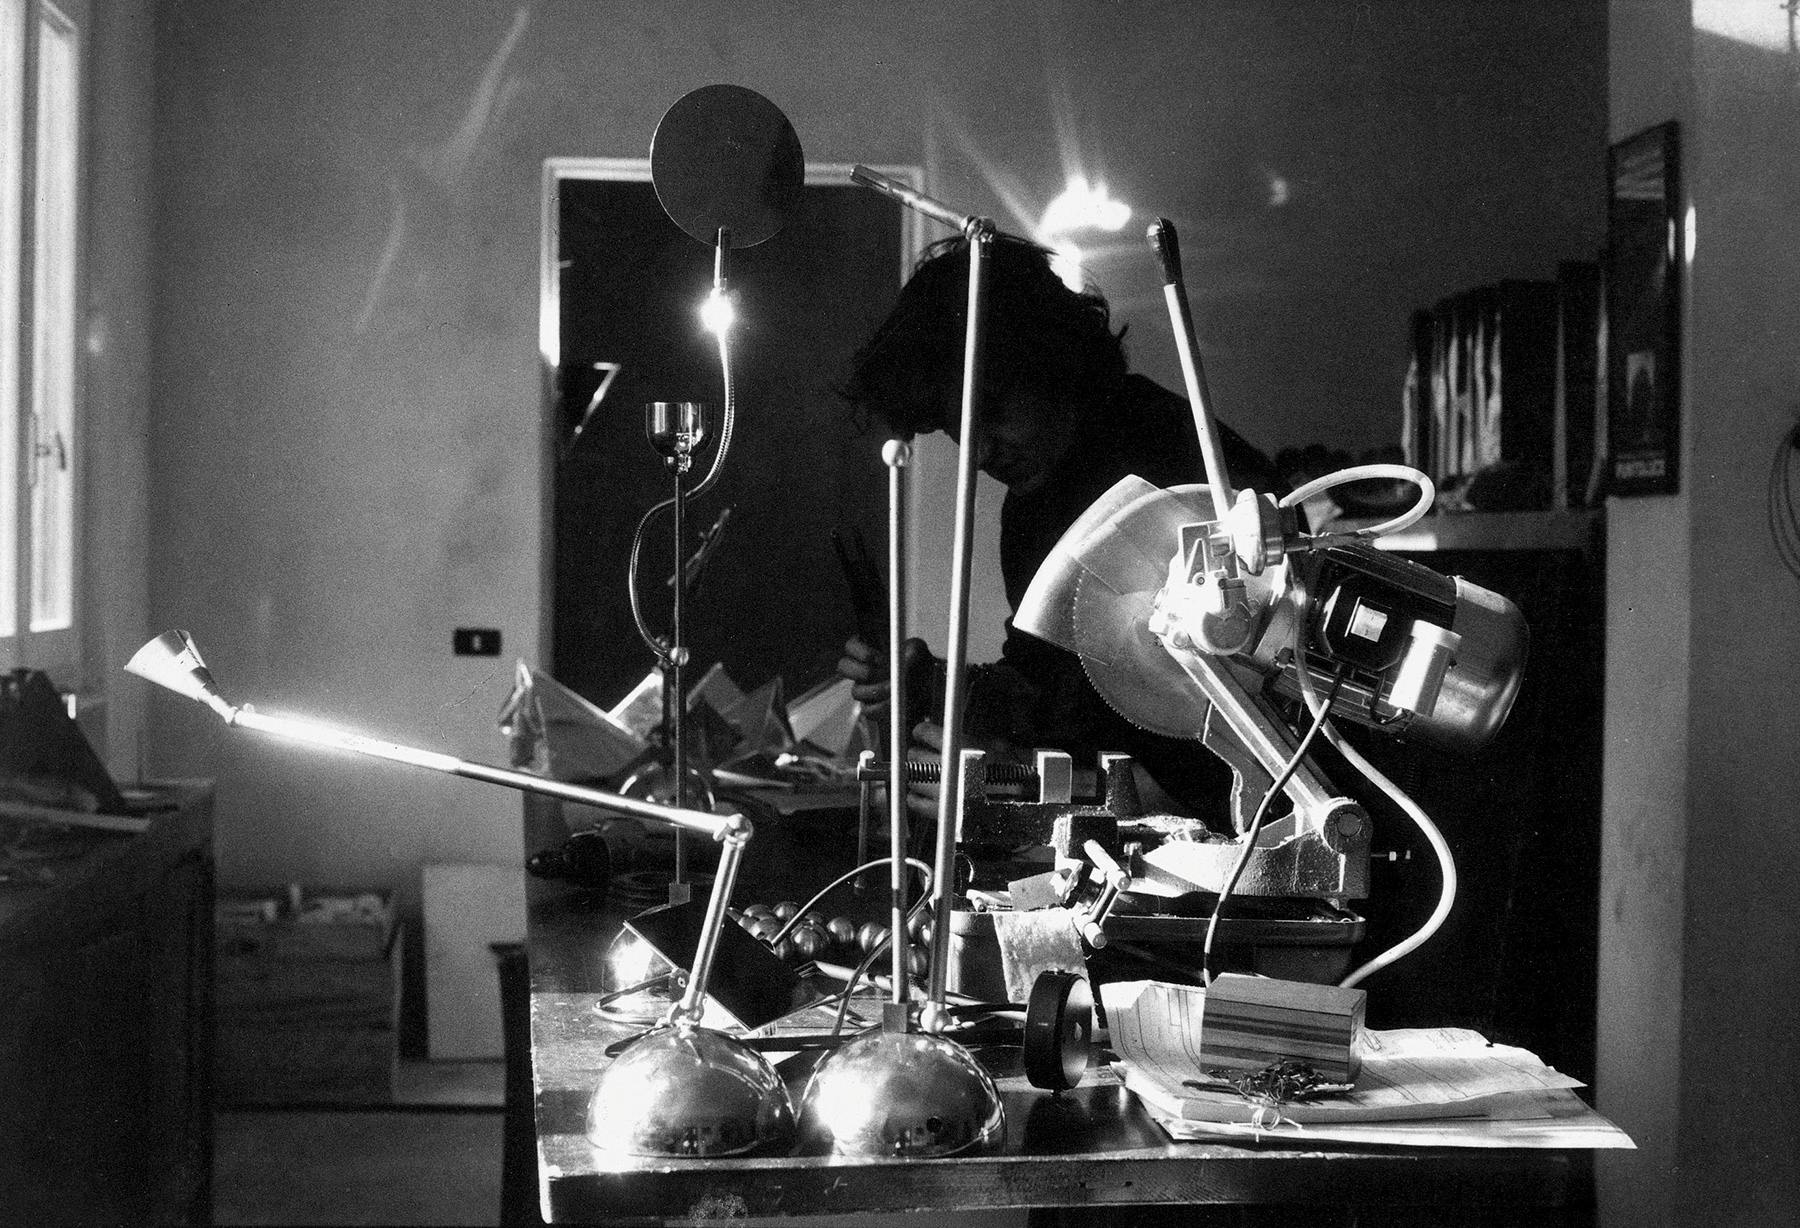 <p>Enzo Catellani inizia la sua avventura creando le prima lampade contenute nel catalogo “Oggetti senza Tempo”, valorizzando in primo luogo la possibilità d’interazione con l’oggetto-soggetto lampada.</p>
